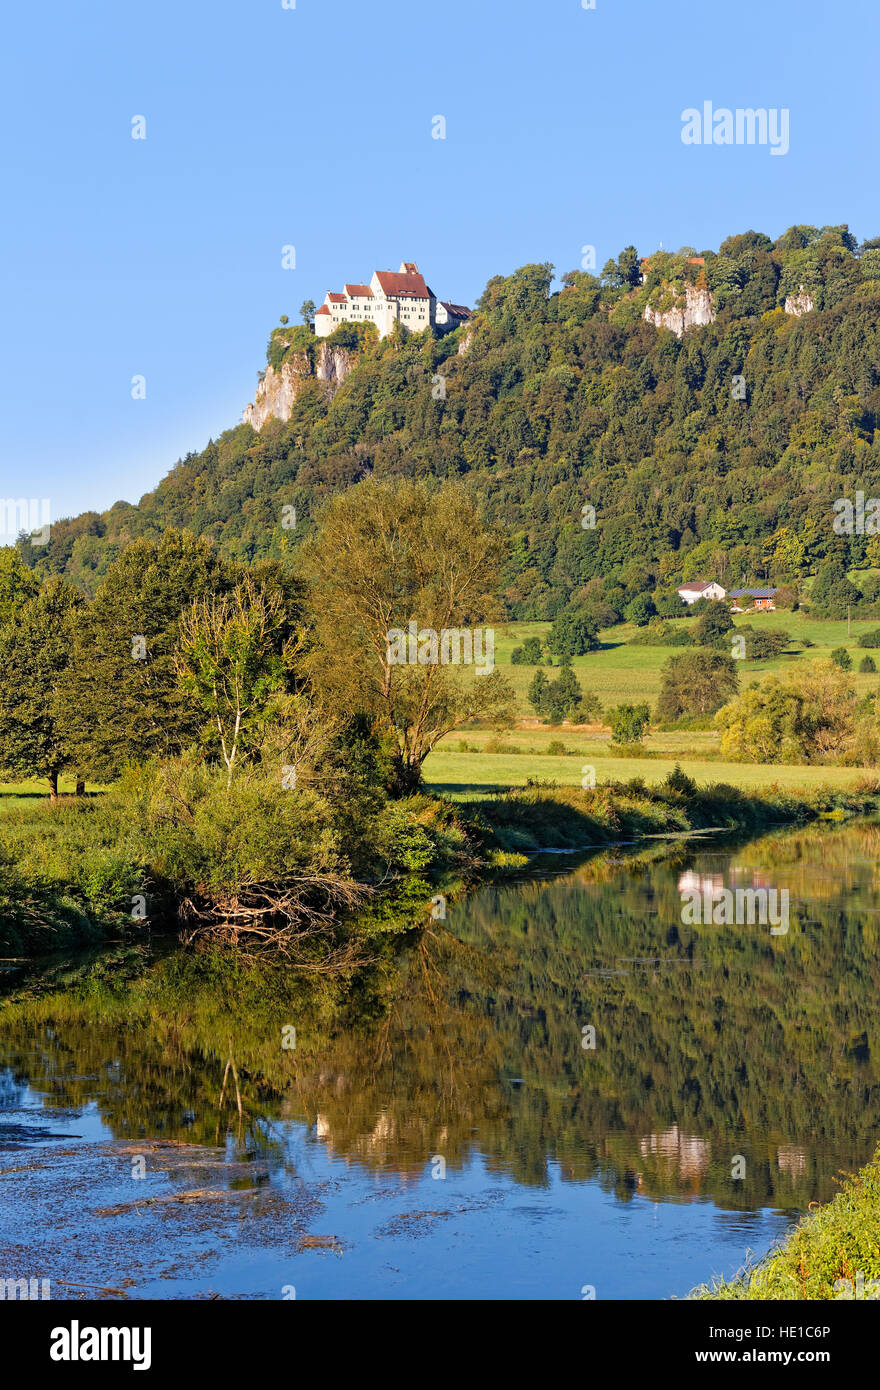 Werenwag château donnant sur le Danube, Beuron, Parc Naturel du Danube supérieur, Jura souabe, Bade-Wurtemberg, Allemagne Banque D'Images